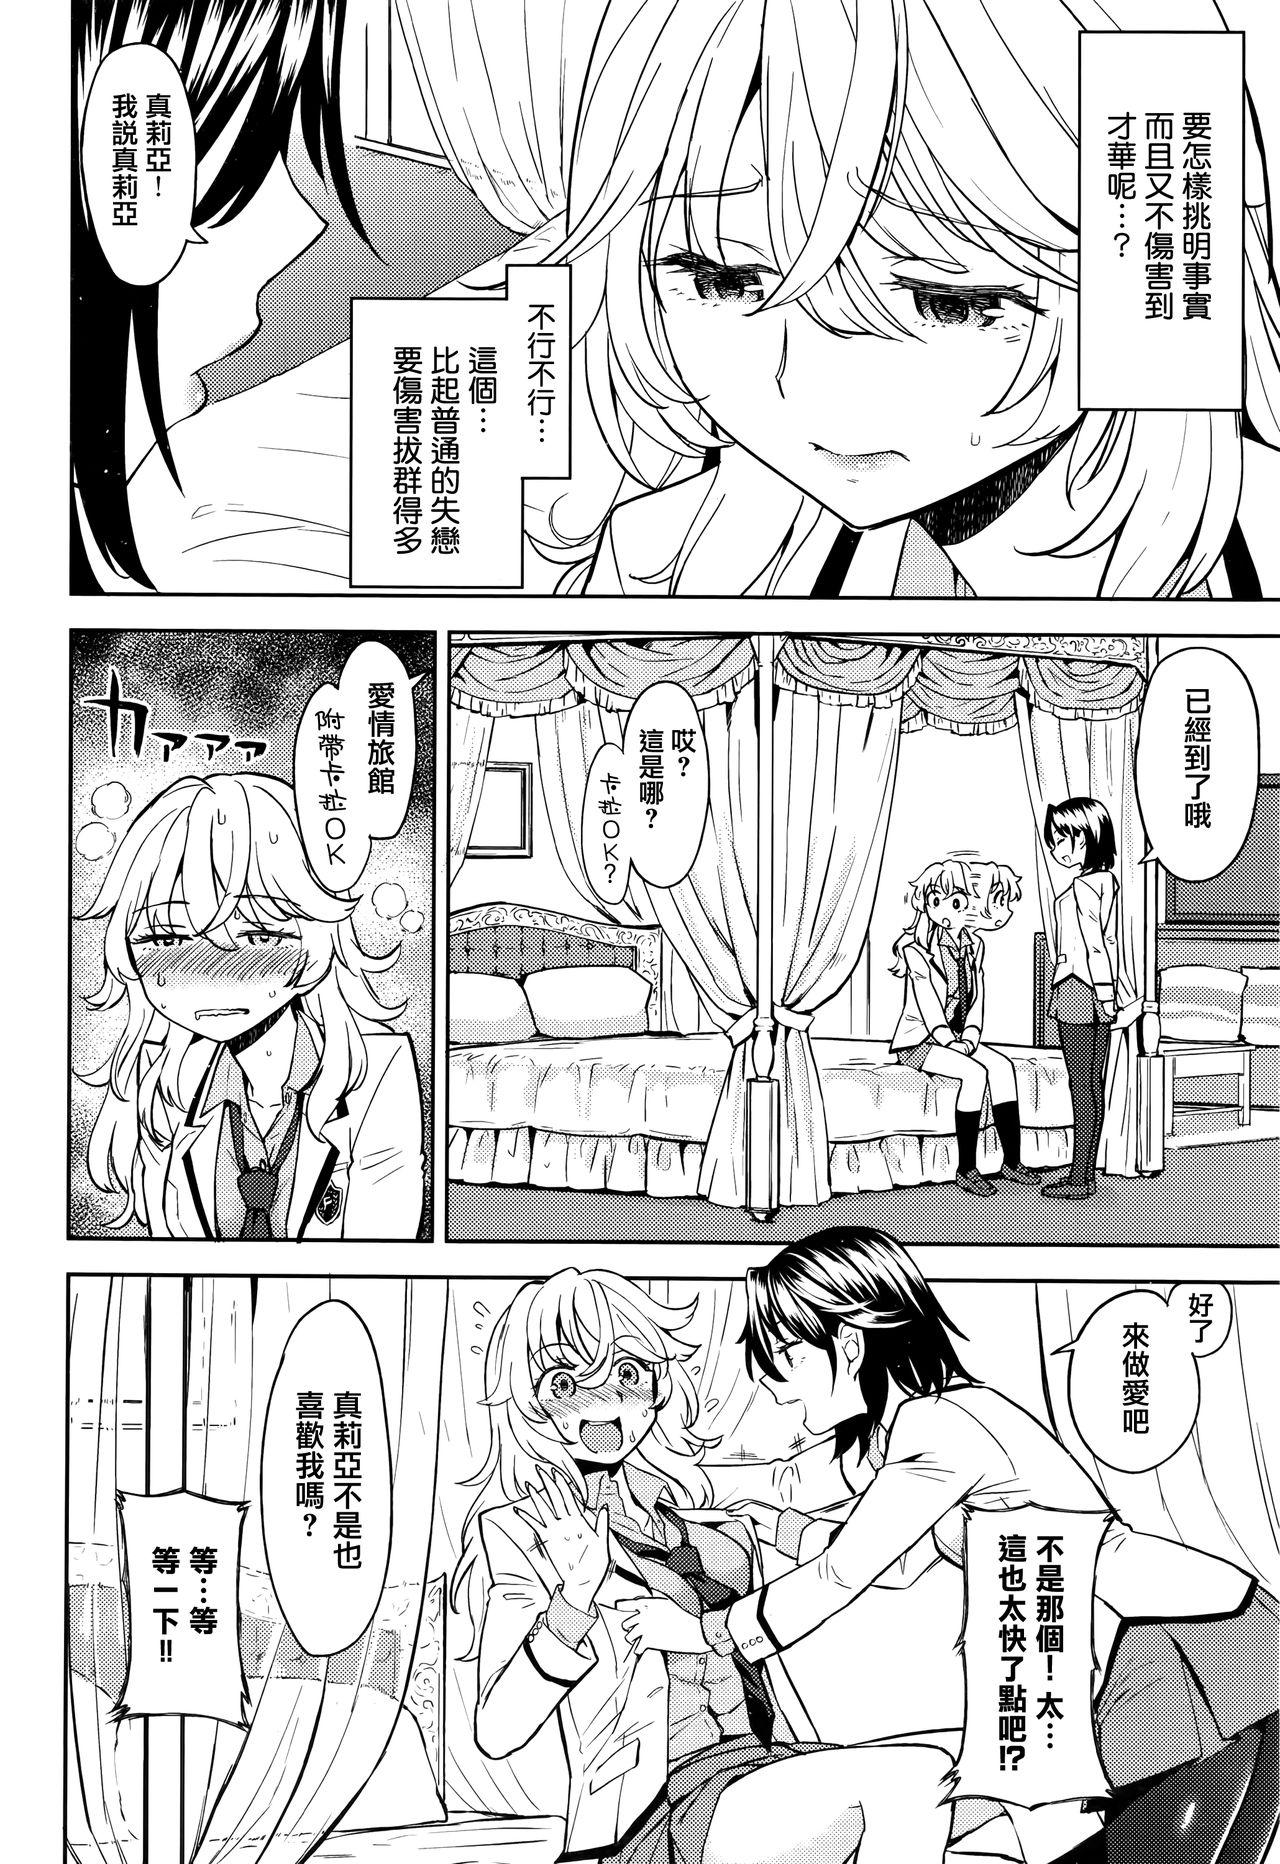 Ball Licking Uso wo tsukaneba Yuri niha narenu Sensual - Page 4